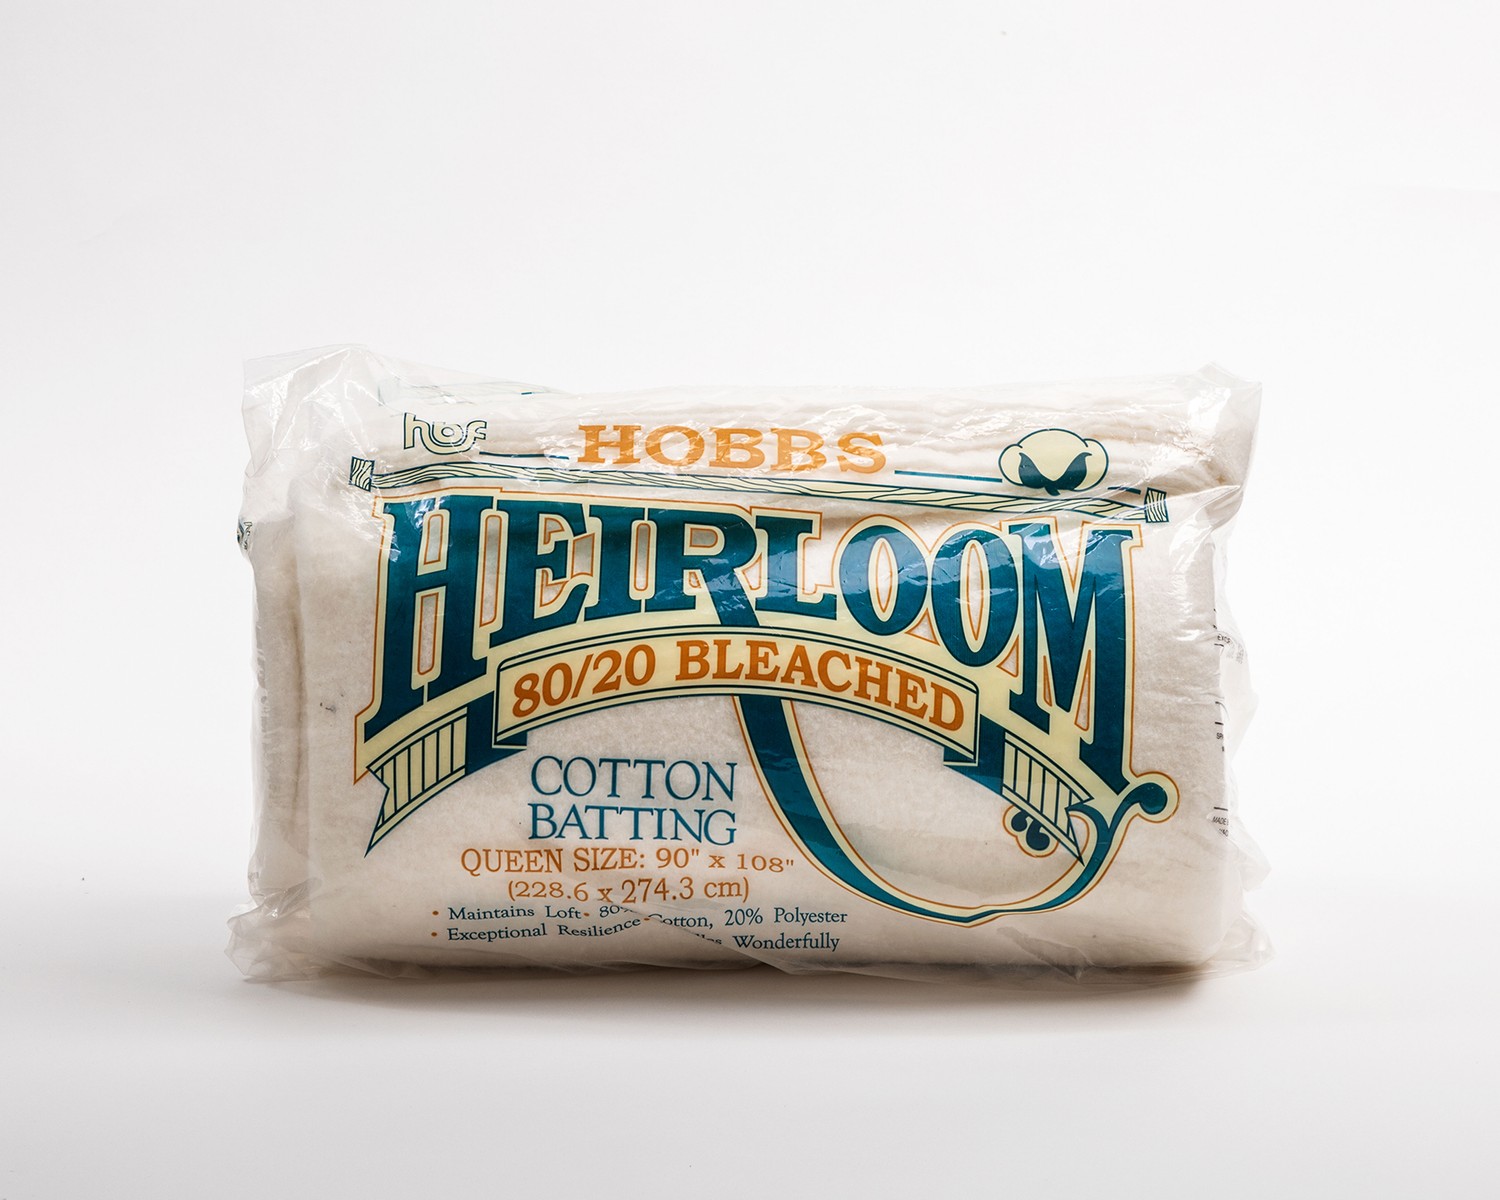 Hobbs Heirloom Cotton Batting – Wee Scotty